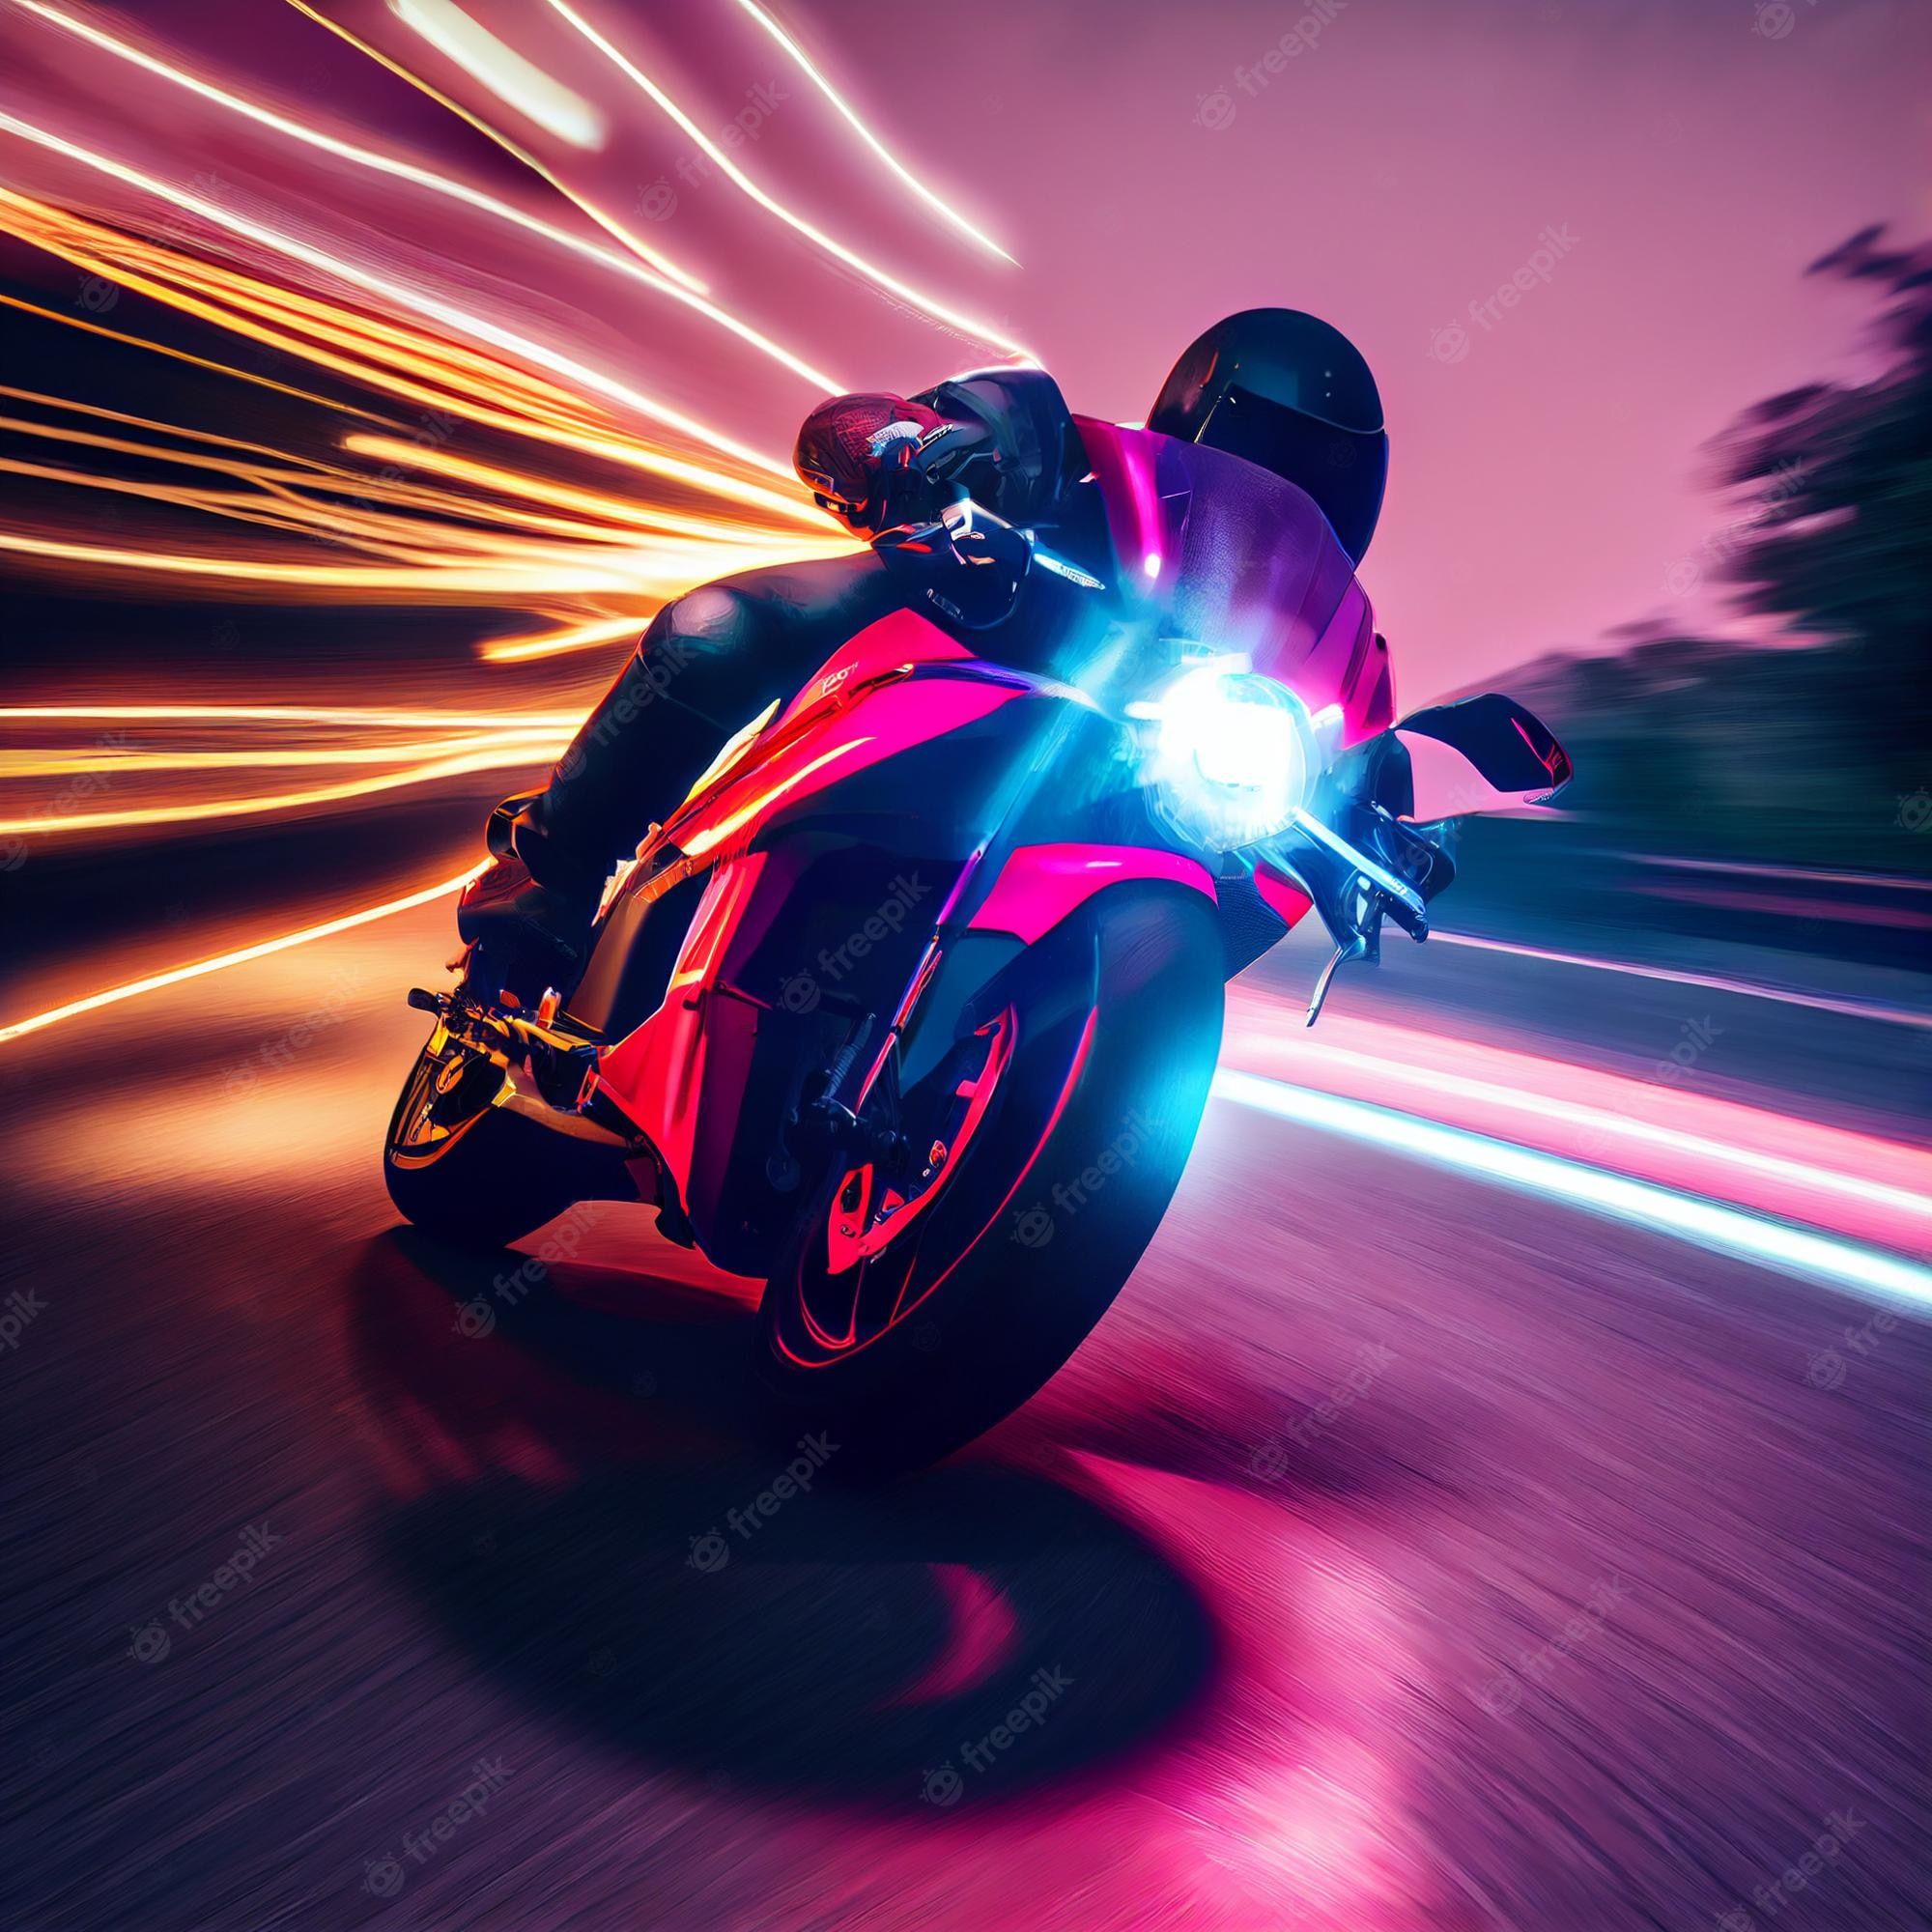  Motorrad Hintergrundbild 2000x2000. Atemberaubendes Foto Eines Biker Motorradfahrers, Der Ein Sportbike Mit Neonlichtern Fährt